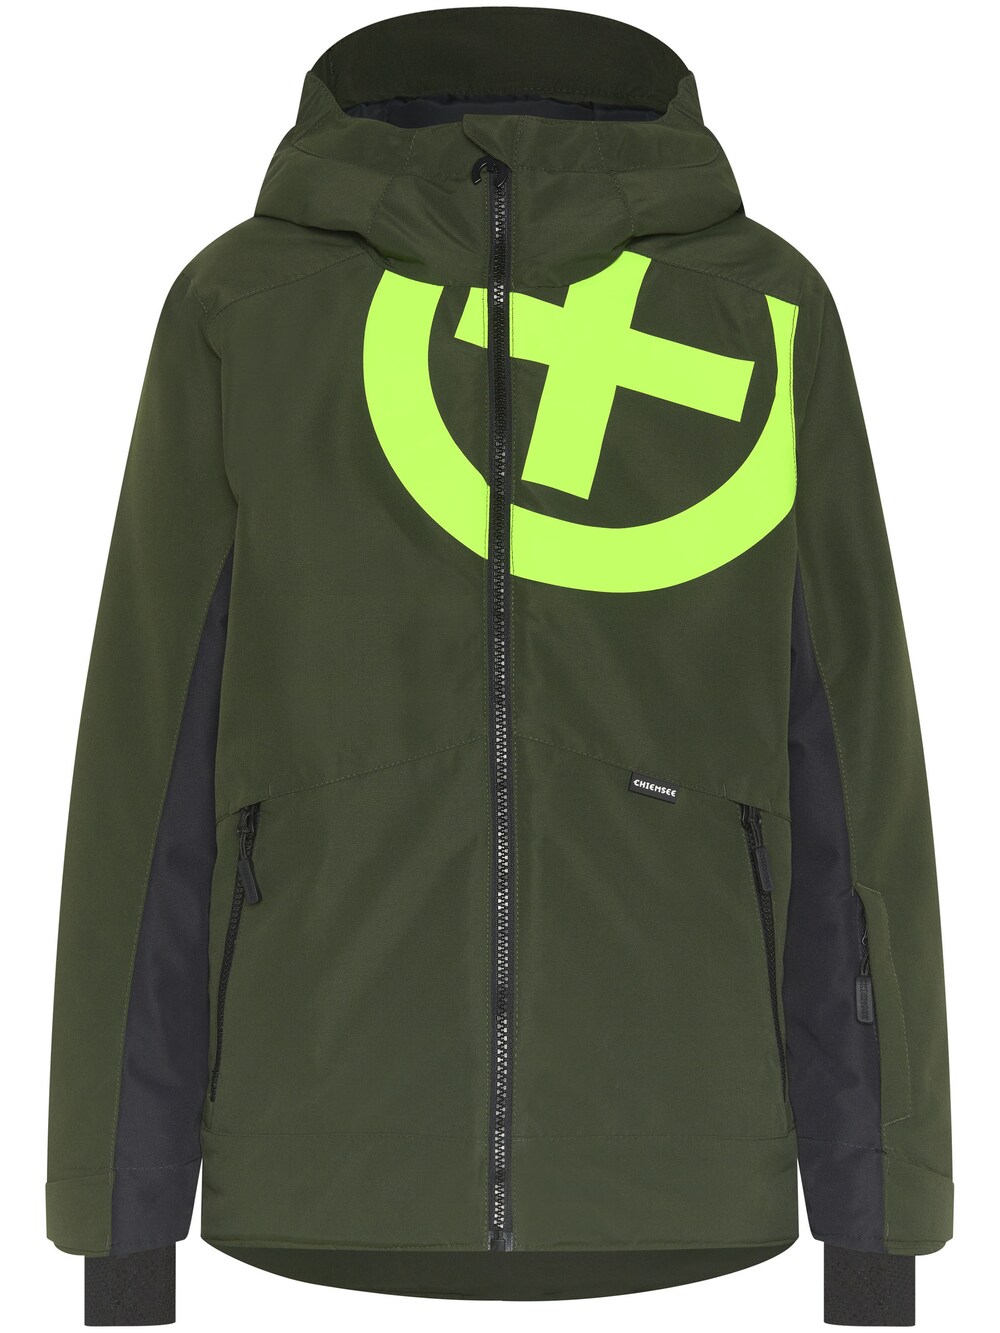 Спортивная куртка Chiemsee Chiemsee, светло-зеленый/темно-зеленый цена и фото